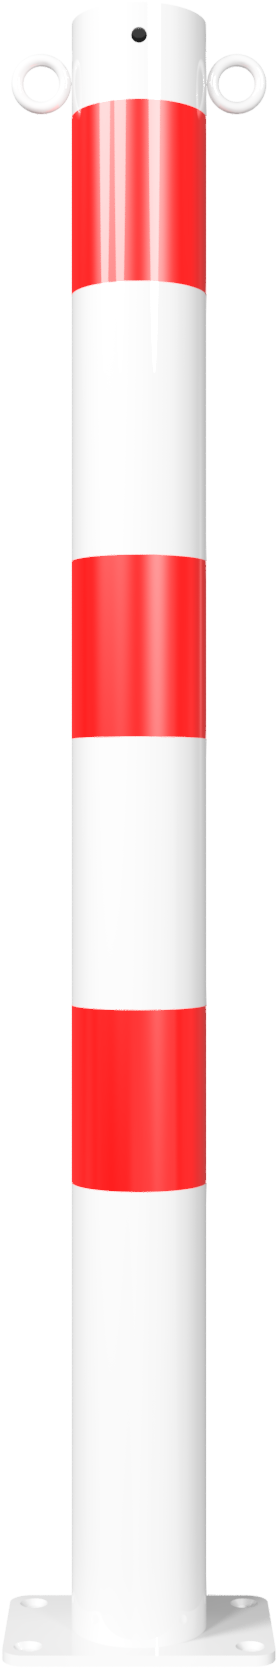 Parkeerpalen - Afzetpaal rond met grondplaat rood-wit 76mm met 2 ogen